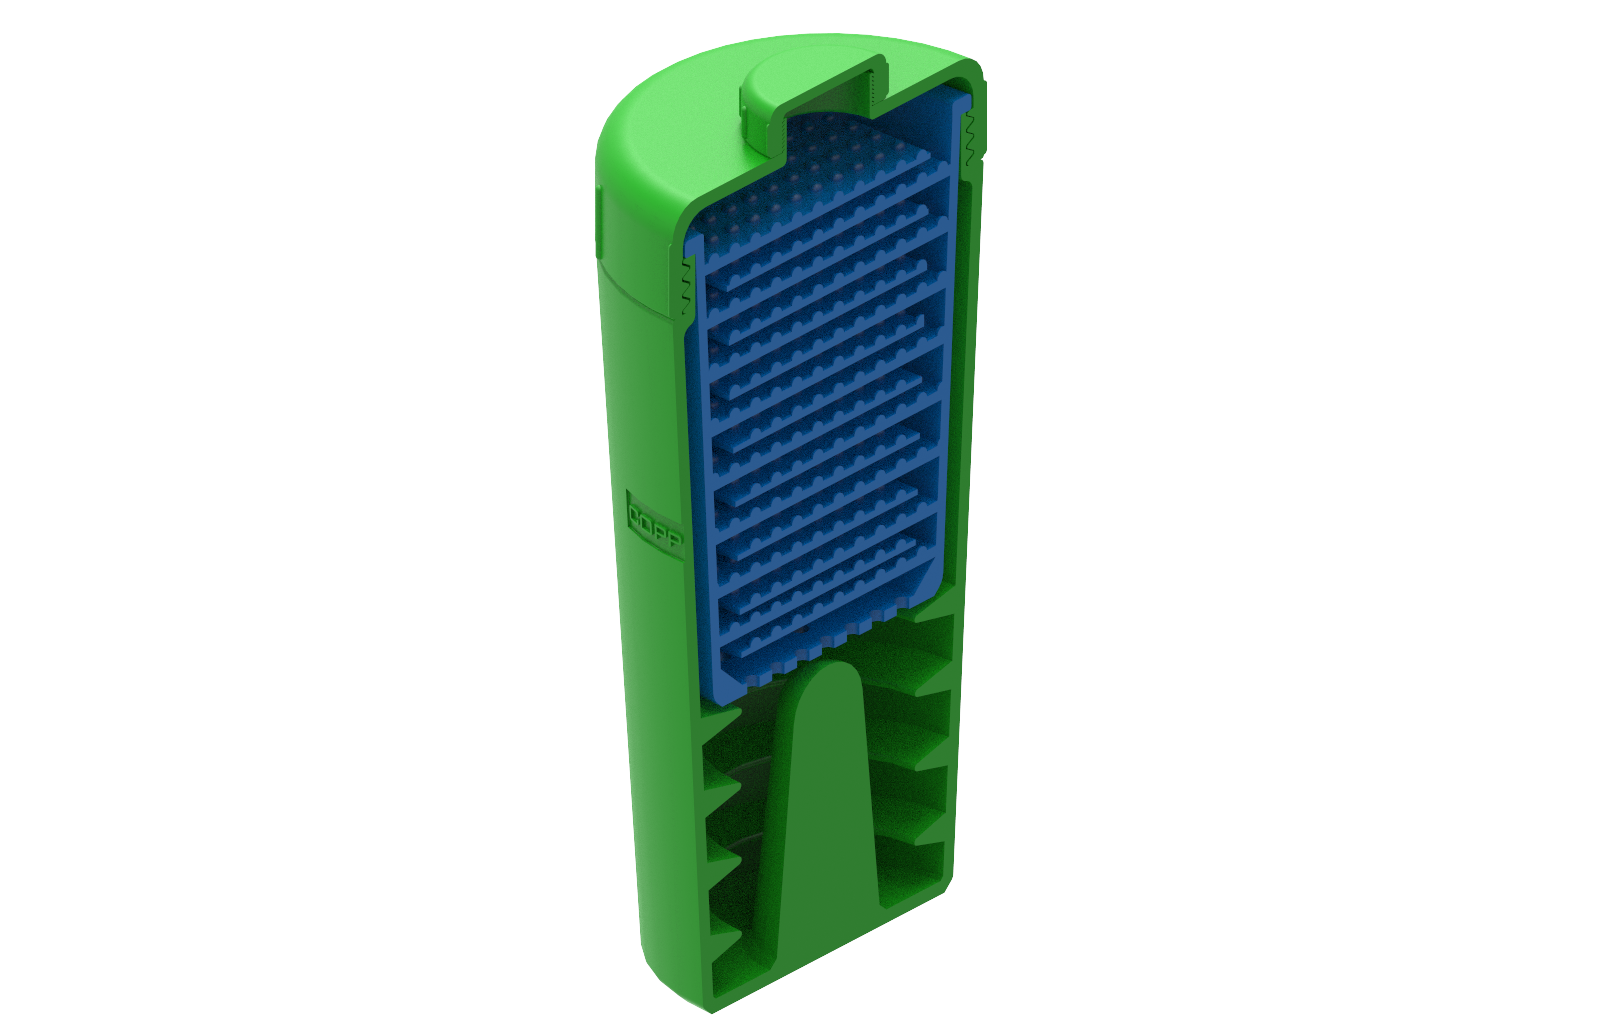 PLA Filament Copper 3D PLActive - Innovative Antibacterial 1.75mm 750gram Sky Blue Color 3D Printer Filament